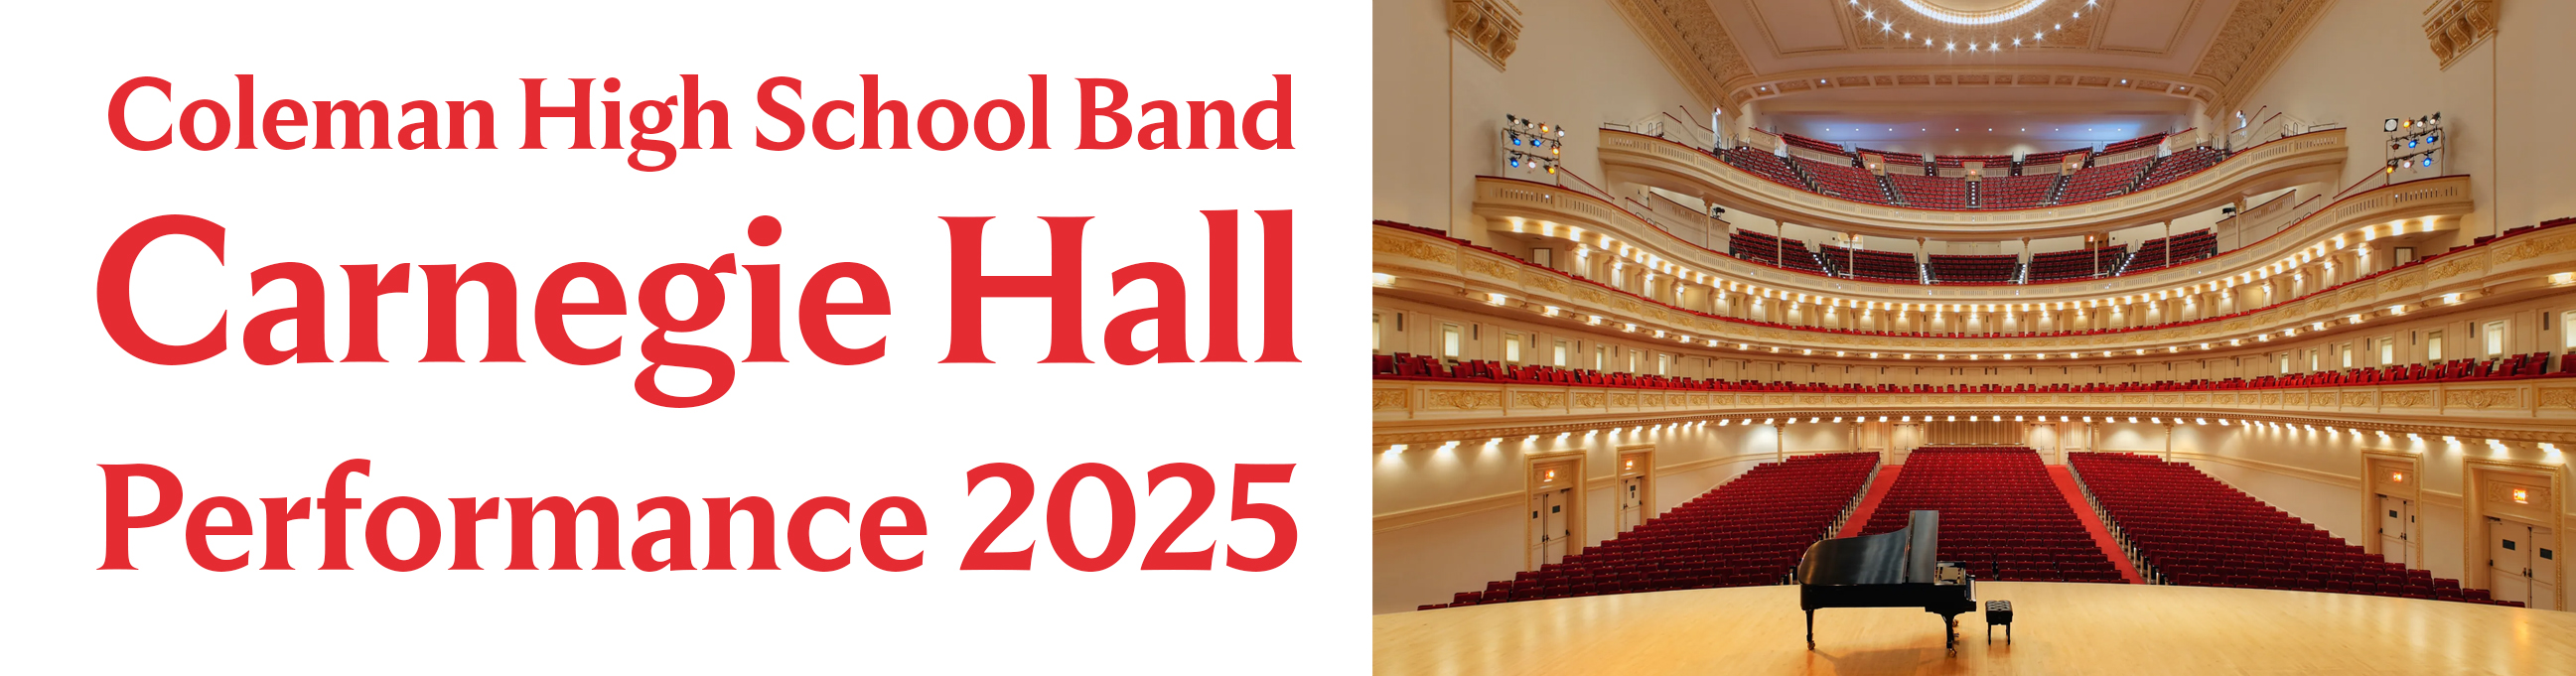 Carnegie Hall Performance 2025